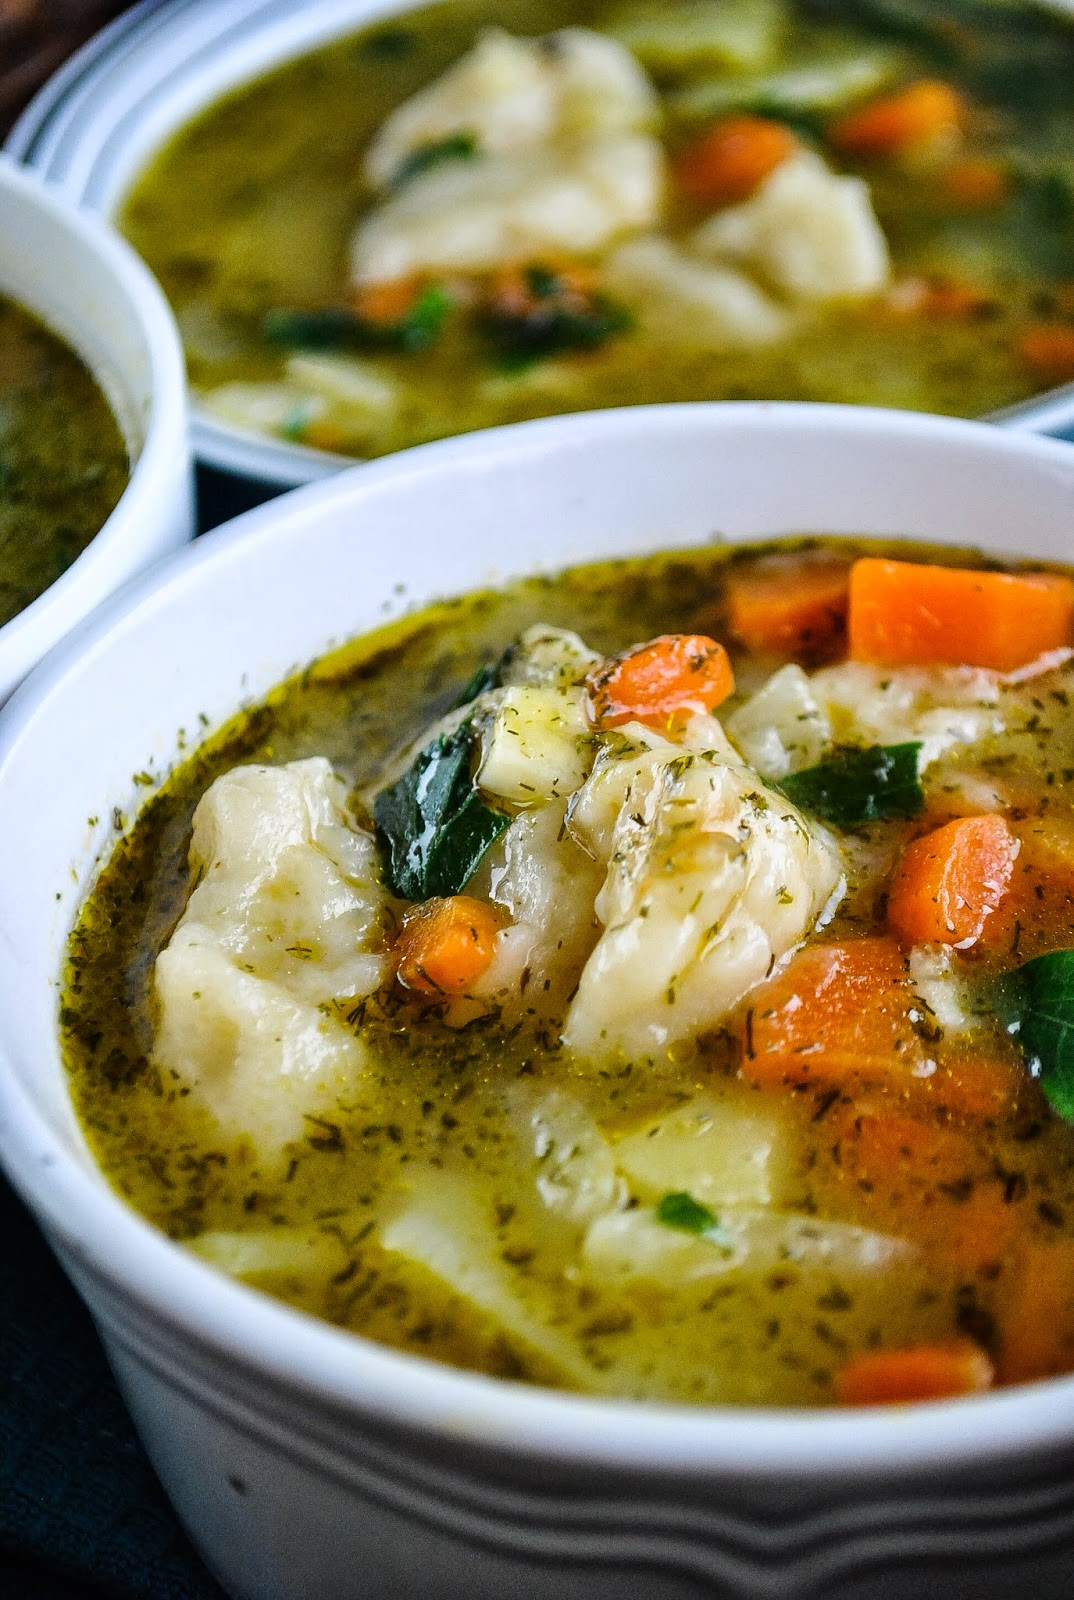 Easy Cheap Vegetarian Recipes
 Easy ve able and dumpling soup video VeganSandra